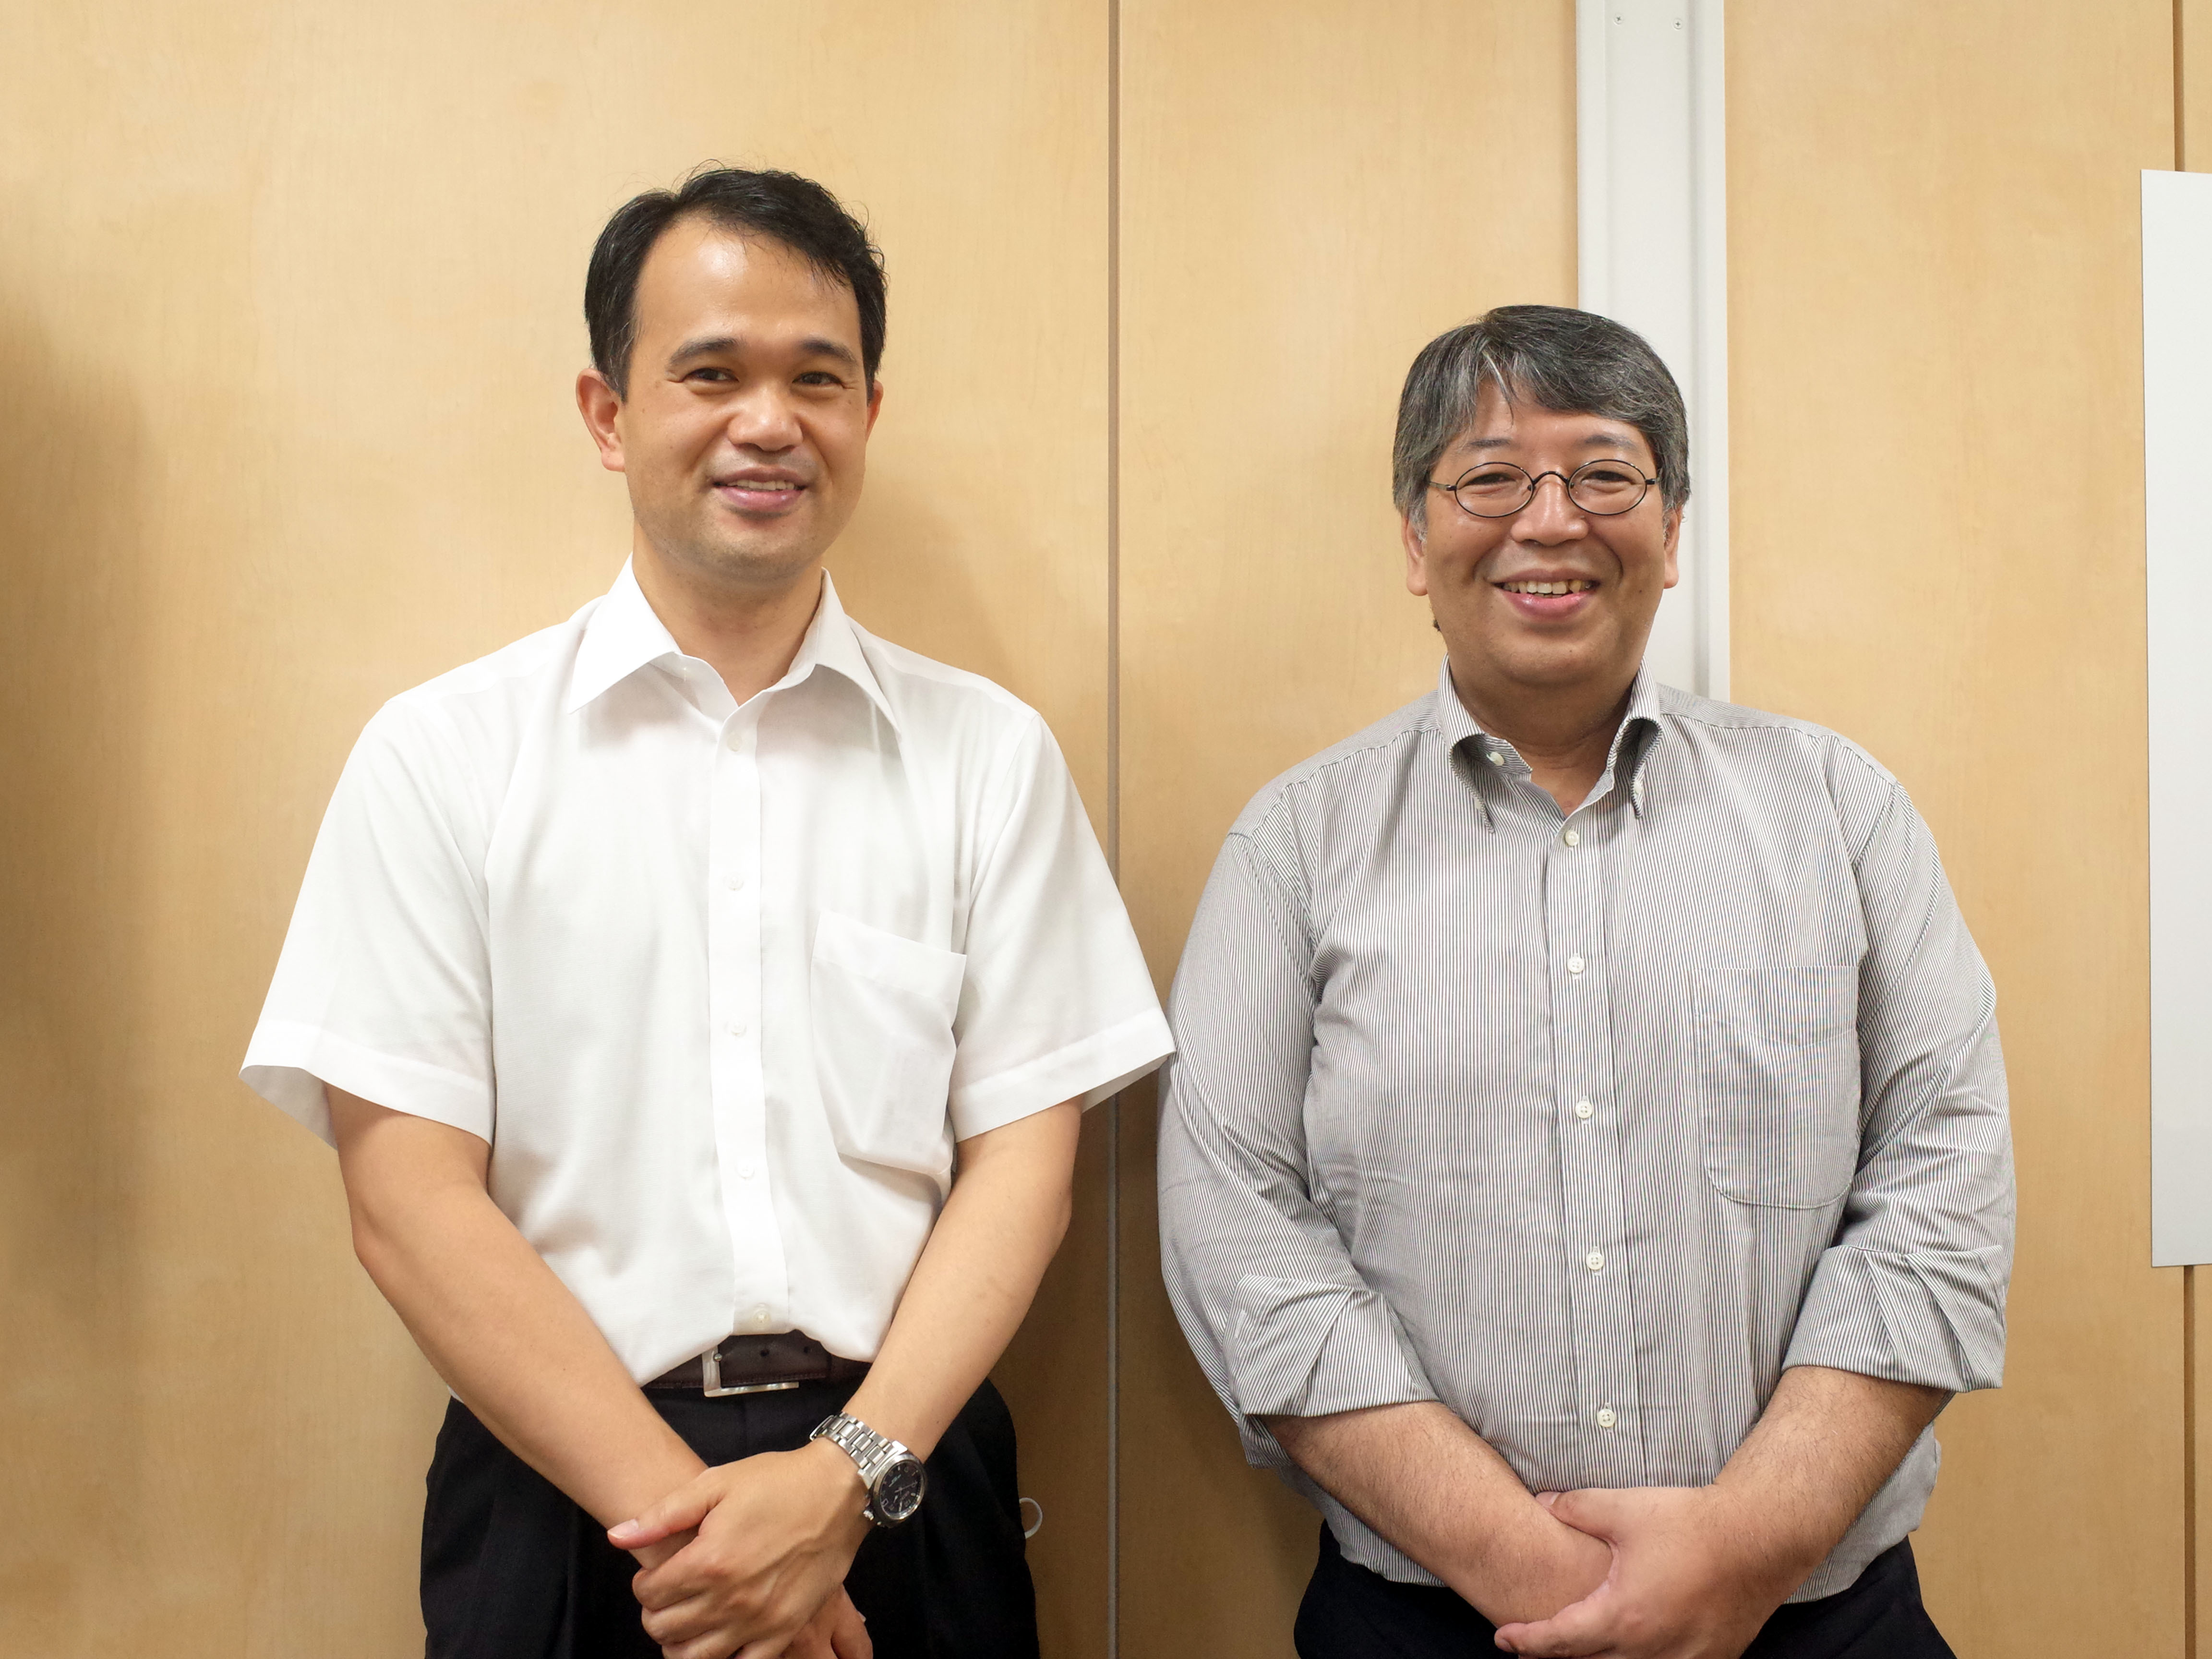 右から、タス マーケティング部部長の中村義隆氏と、マーケティング部データソリューション室長の秋山晋氏